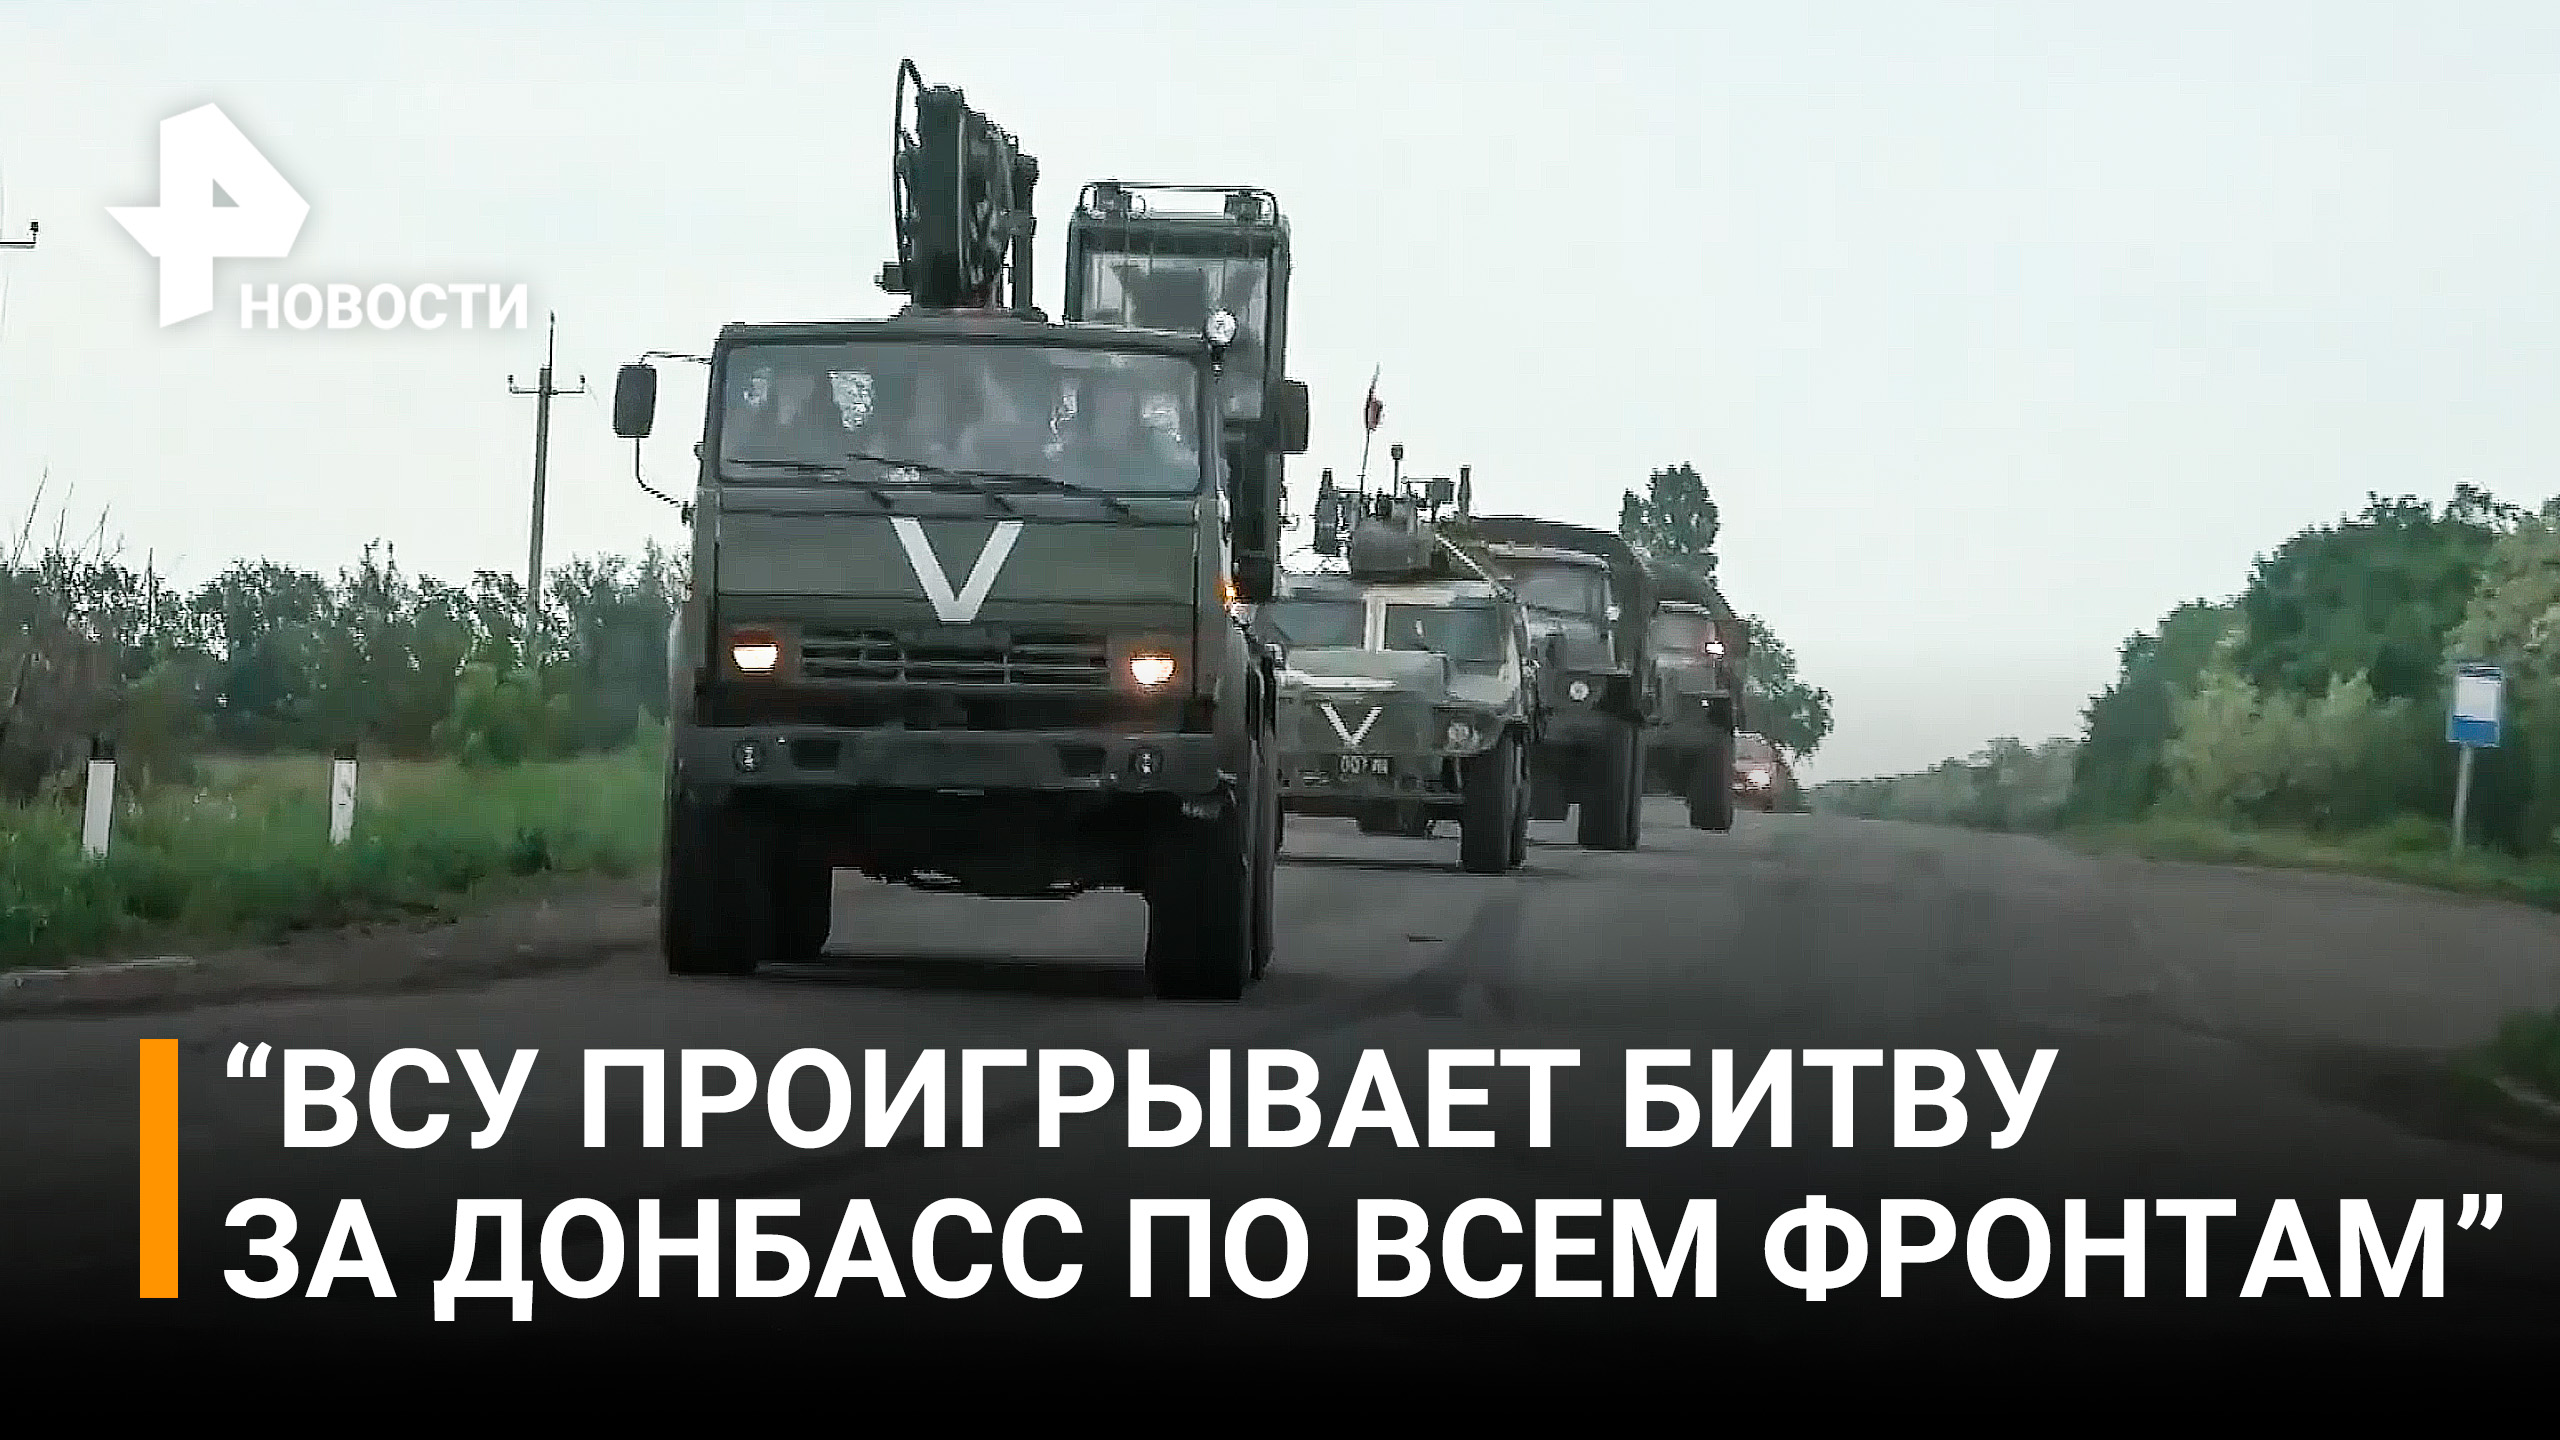 ВСУ проигрывает битву за Донбасс по всем фронтам - ополченцы Донбасса / РЕН Новости